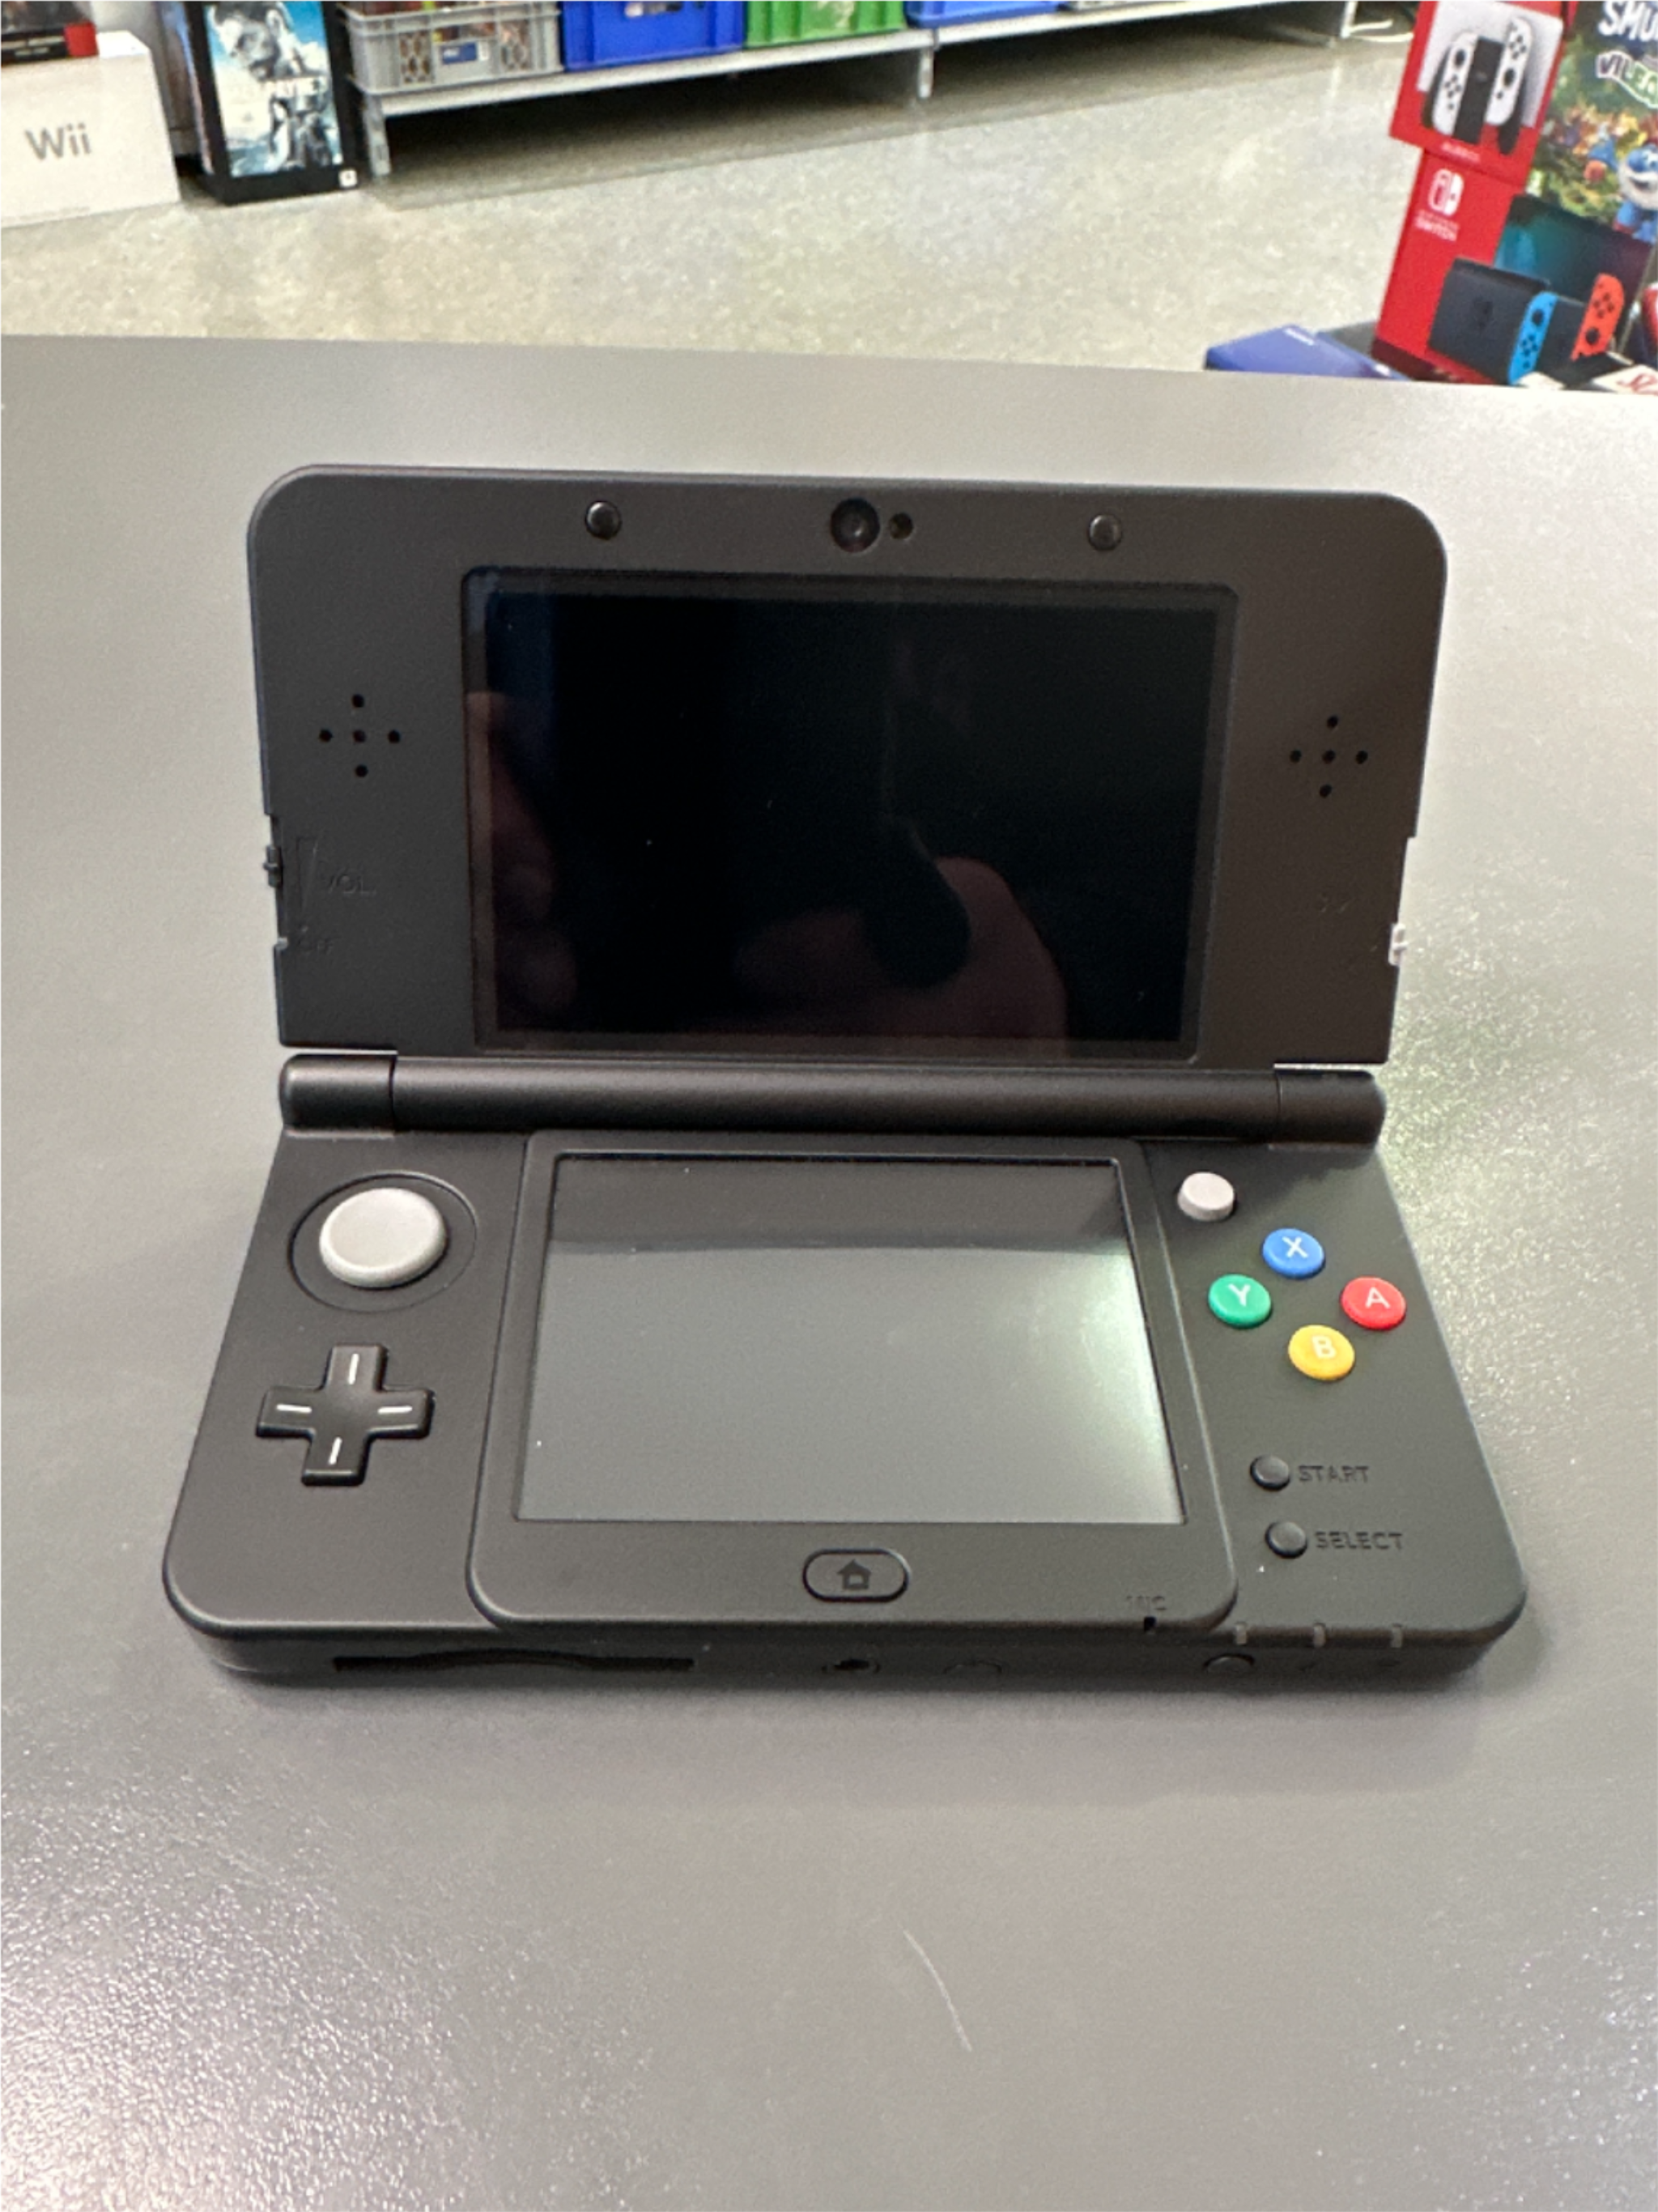 New Nintendo 3DS schwarz * gebraucht toller Zustand